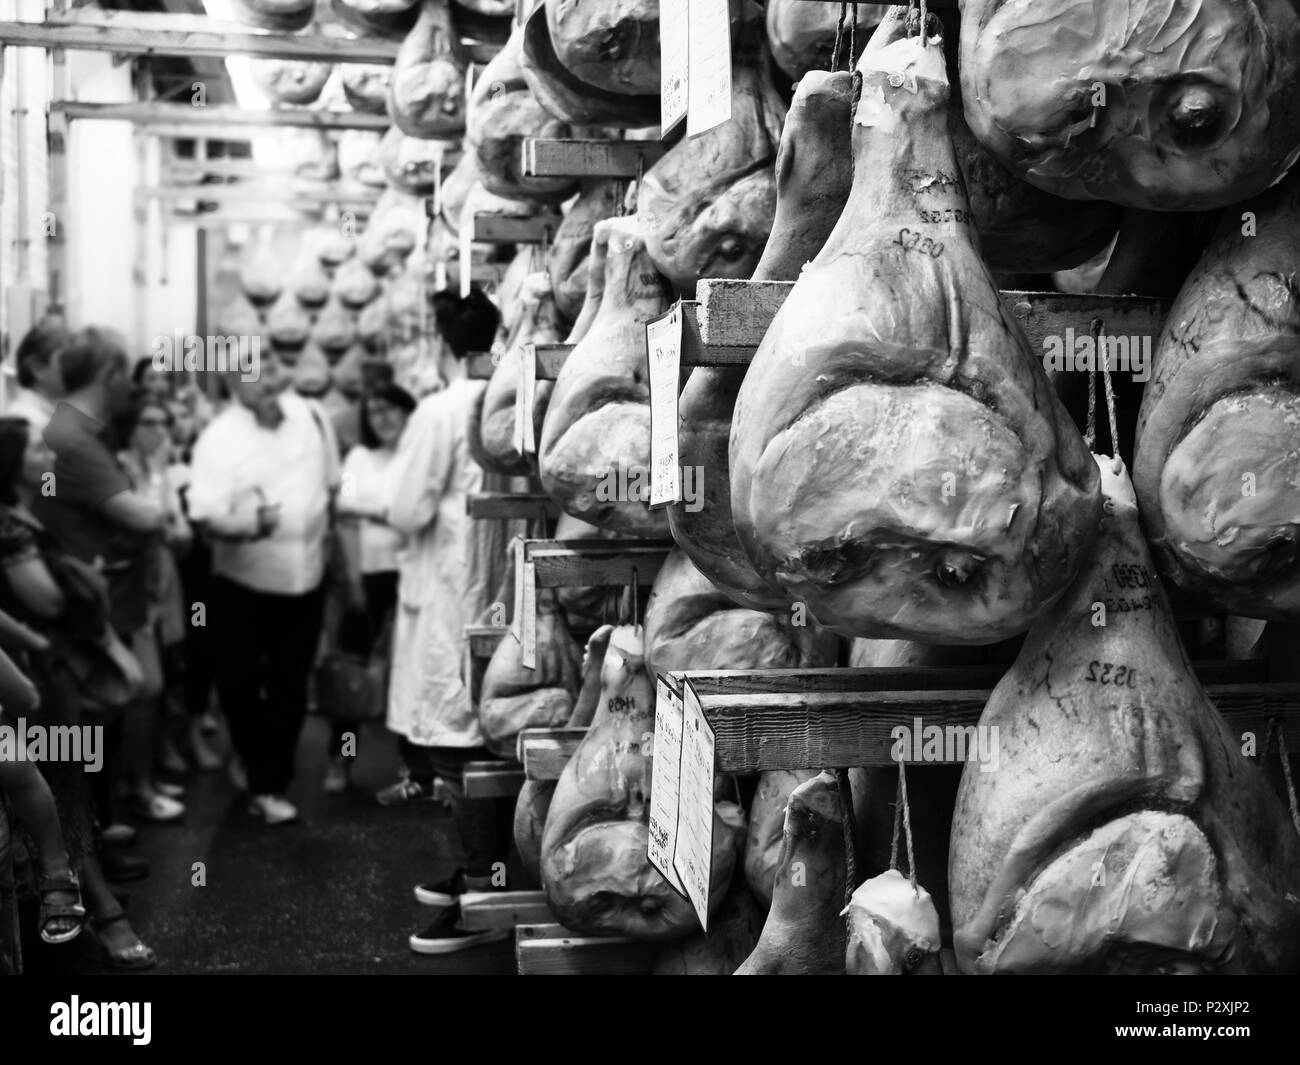 Montagnana, Italien. Mai 20, 2018: Geführte Tour in einem ham Factory anlässlich des jährlichen Festival der rohen Schinken in Montagnana, Italien. Stockfoto